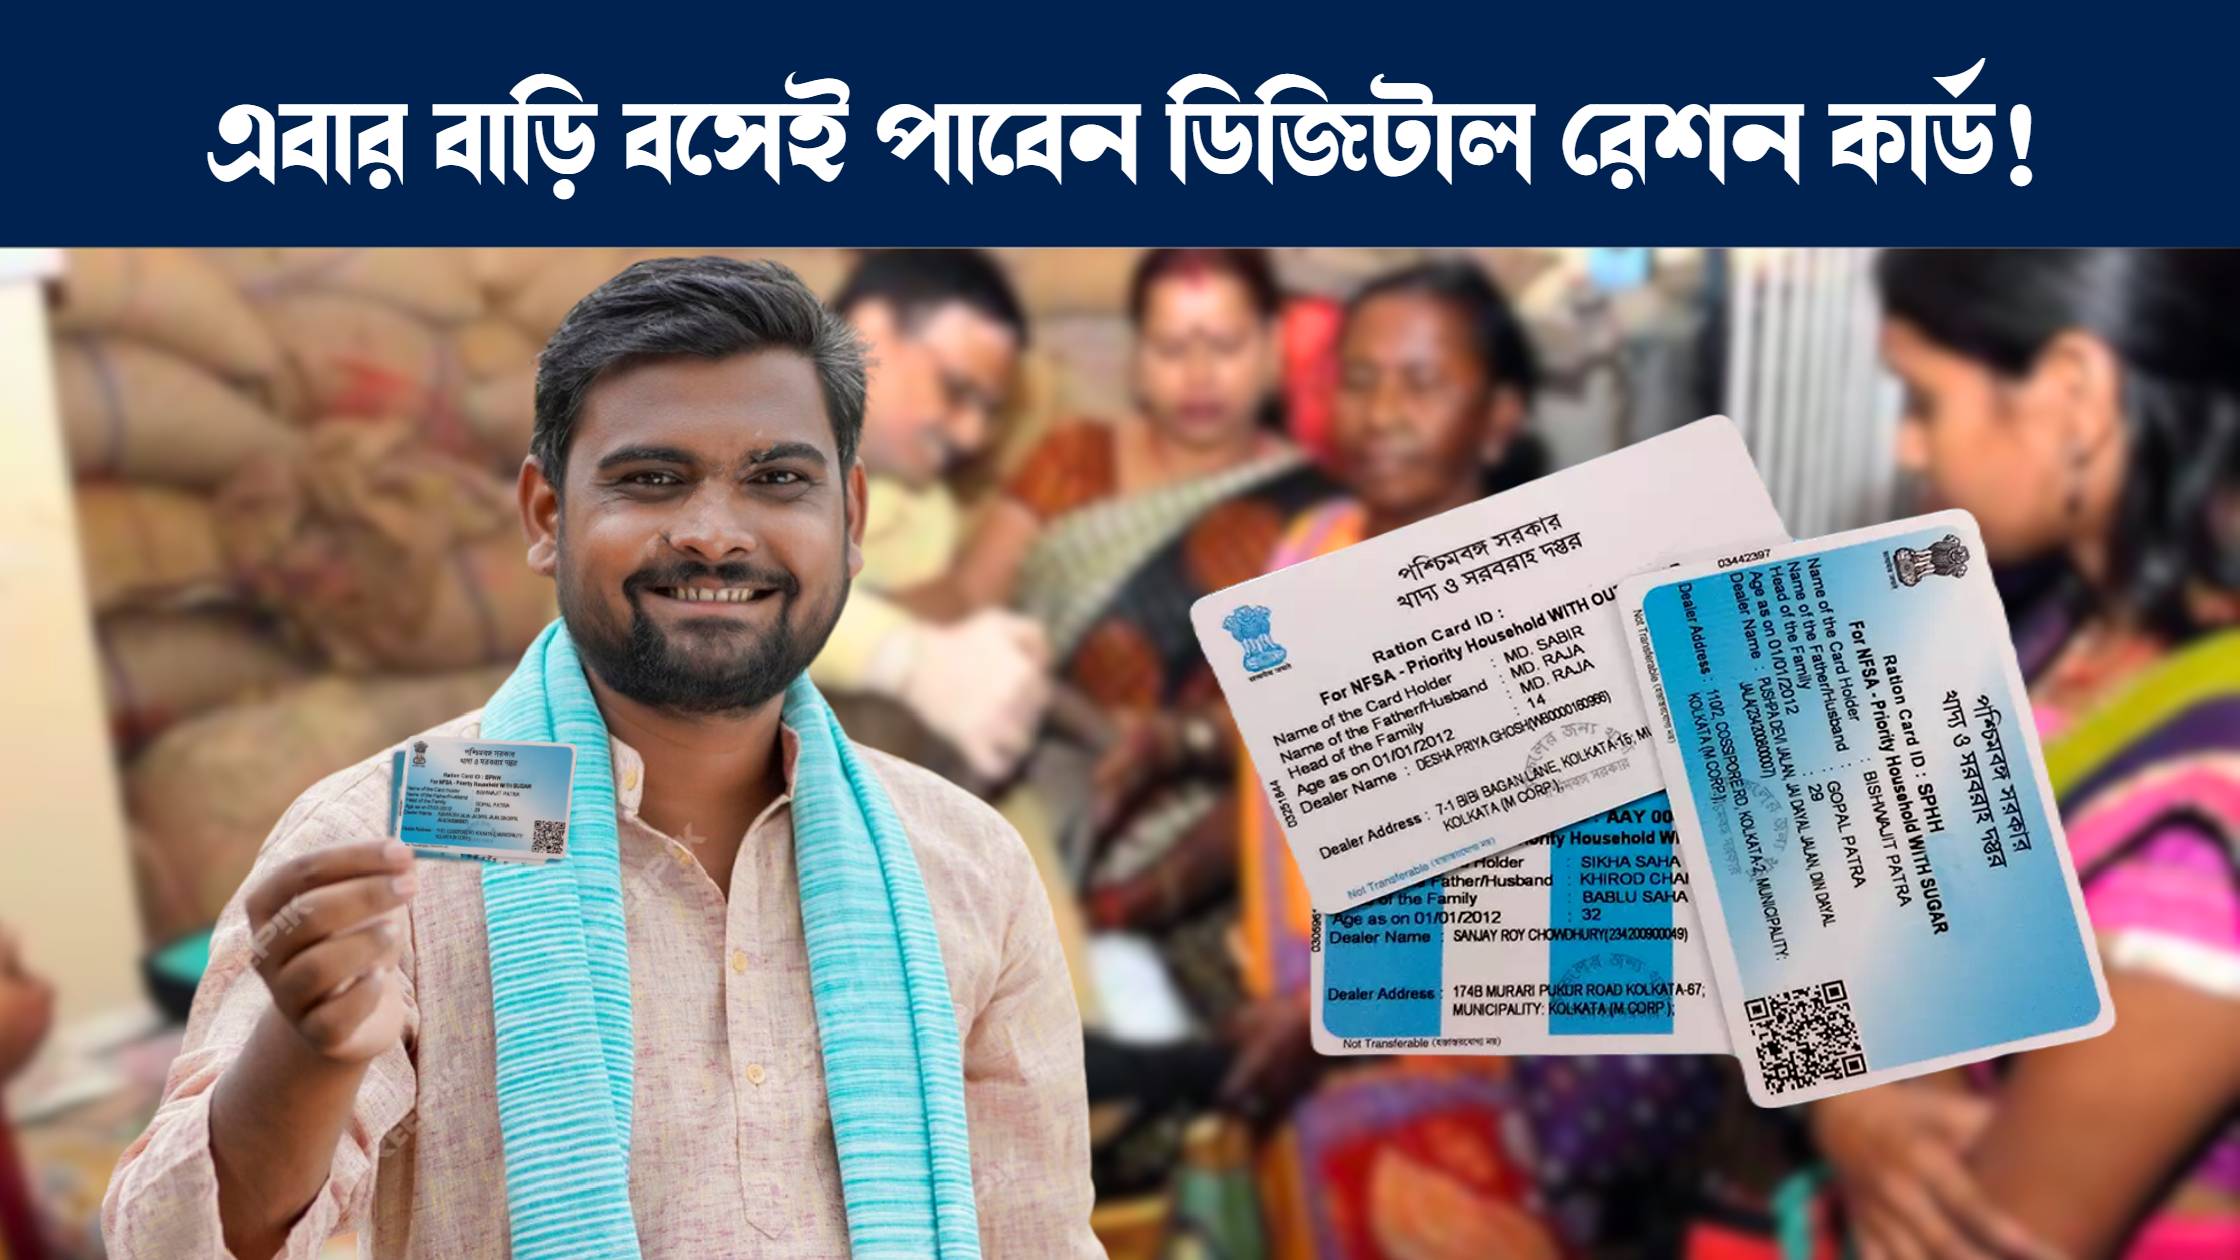 অনলাইনে ডিজিটাল রেশন কার্ডের জন্য আবেদন করার পদ্ধতি : How to apply online for digital ration card in West Bengal